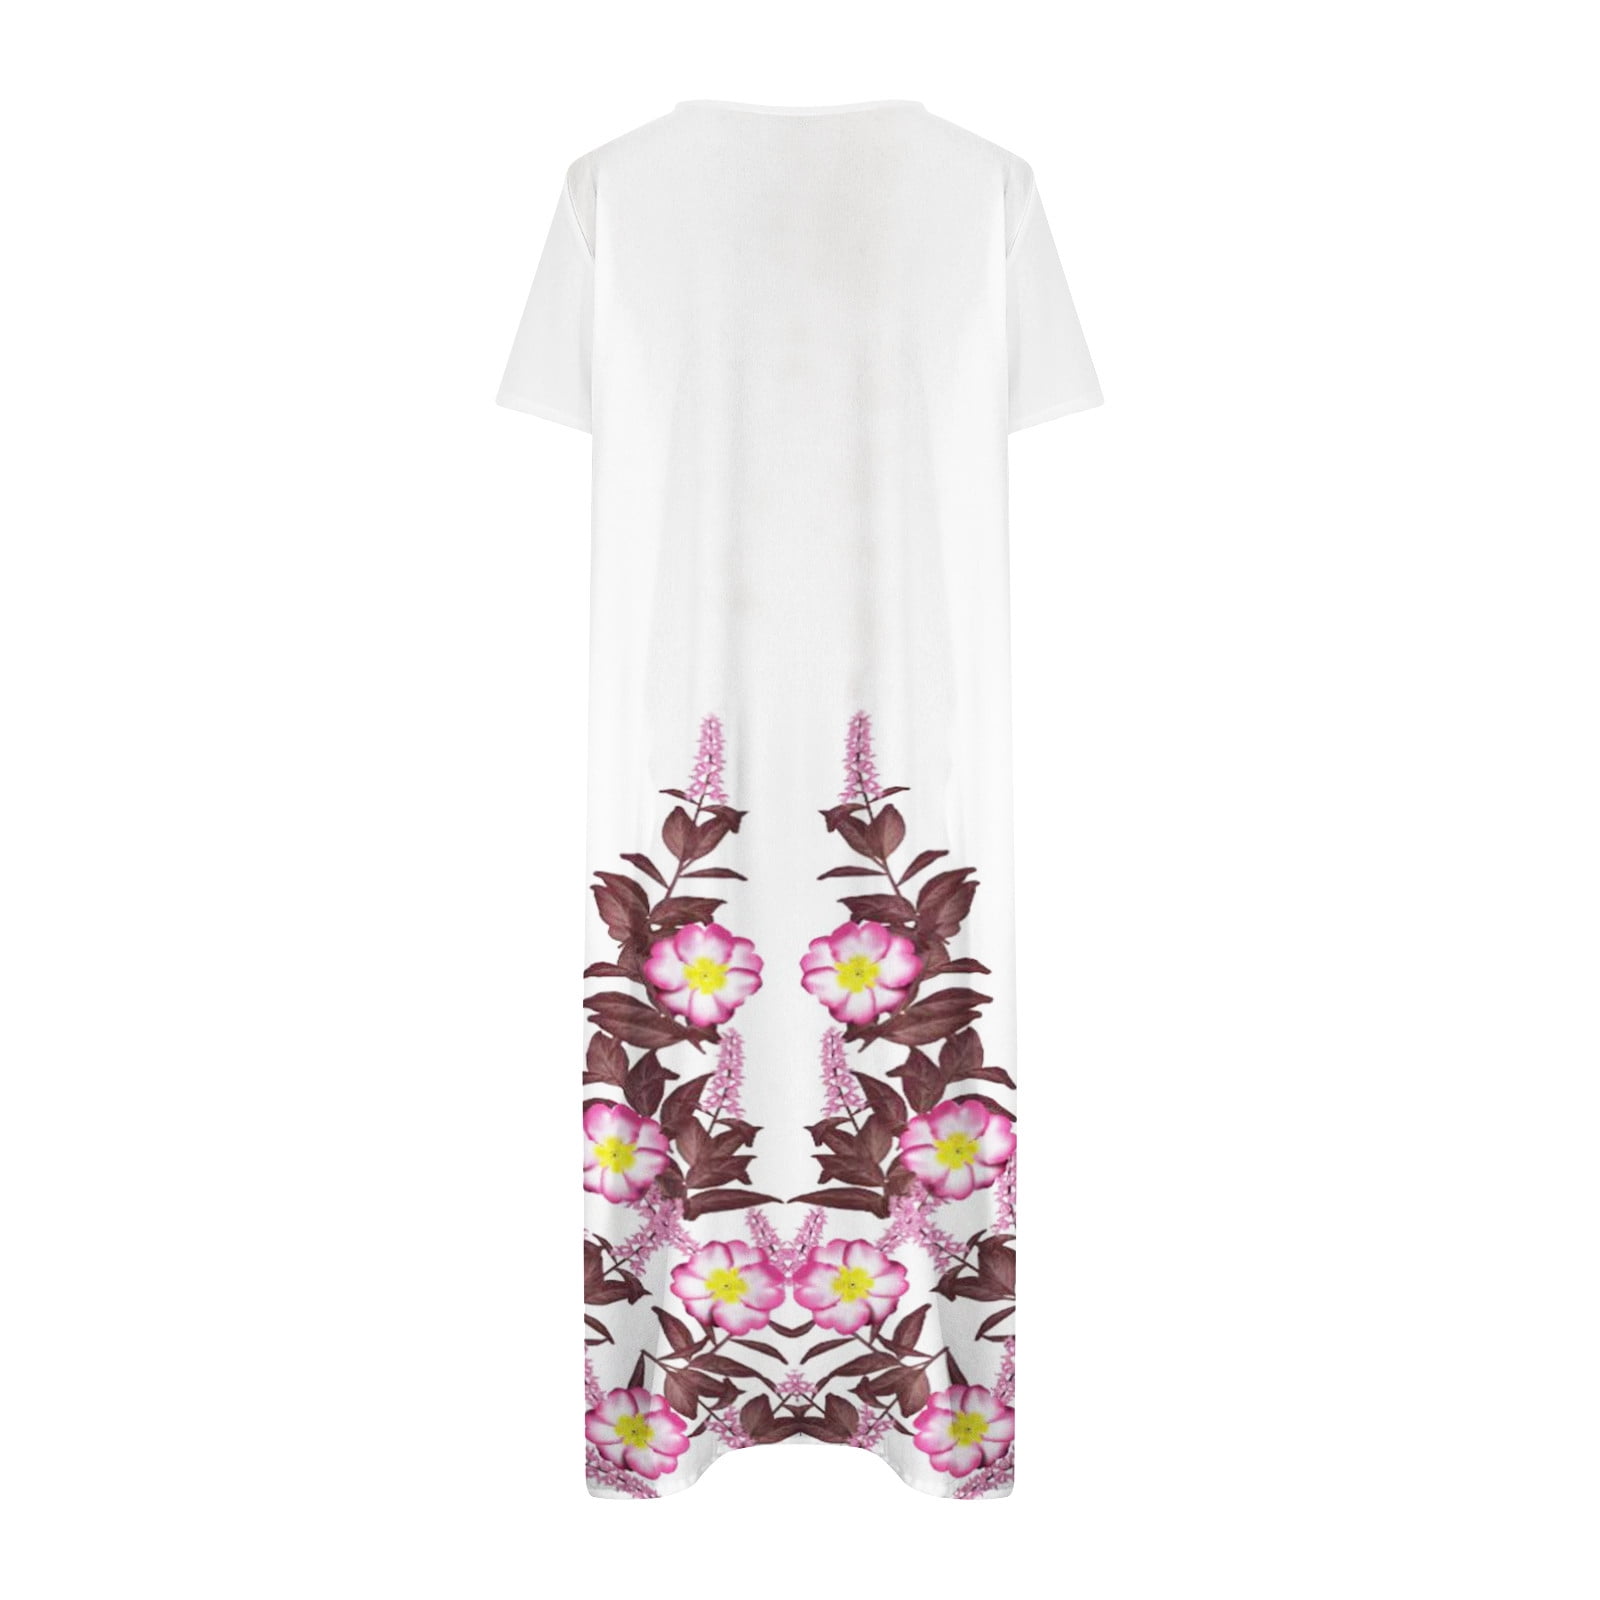 Guzom Easter Dress for Women- Casual Spring 2023 New Sleeveless Floral  V-Neck Maxi Dresses Womens Tops White